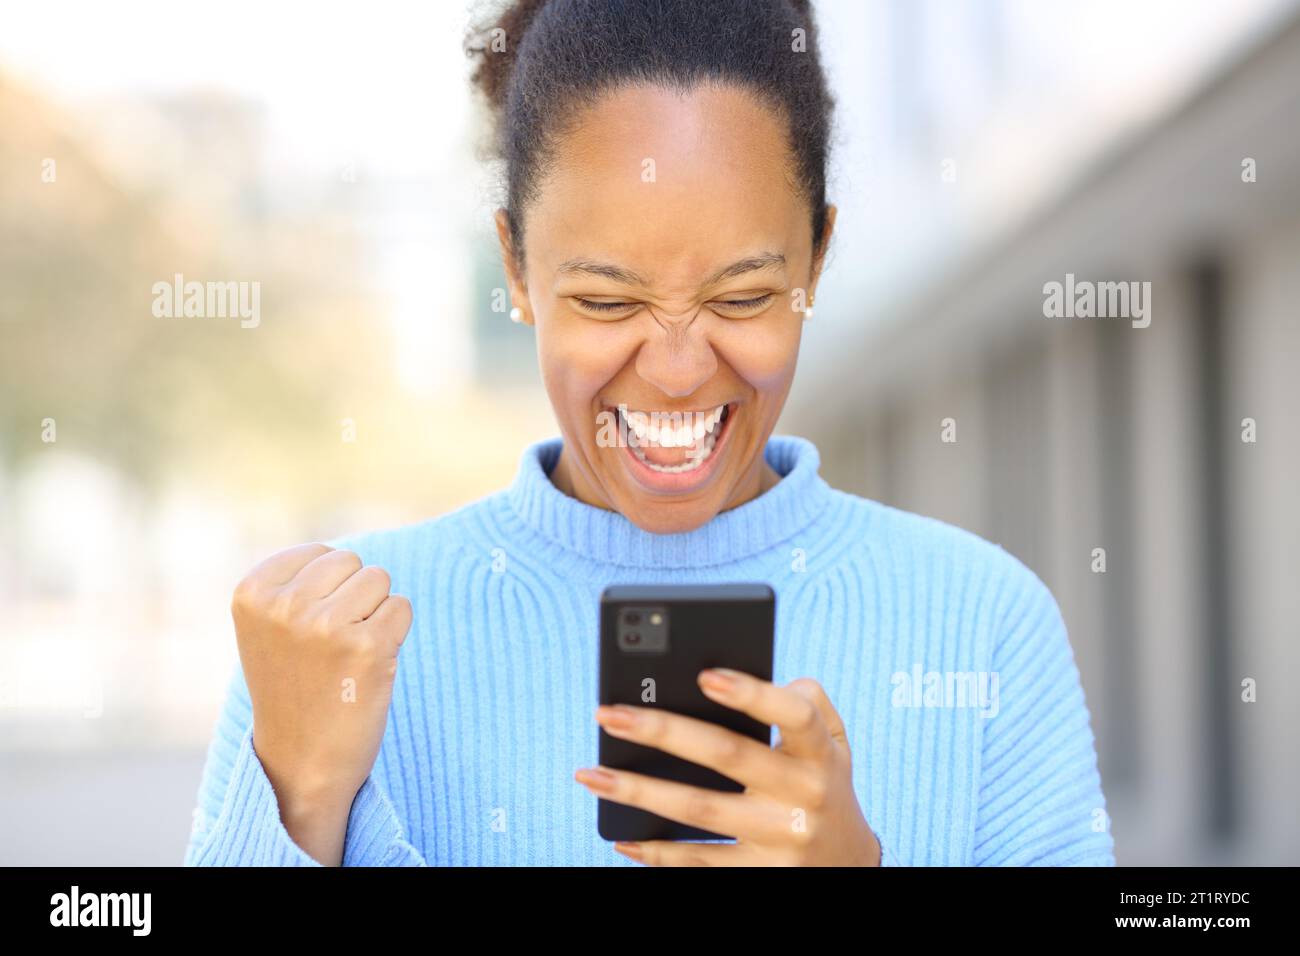 Vorderansicht Porträt einer aufgeregten schwarzen Frau, die auf der Straße gute Nachrichten am Telefon überprüft Stockfoto